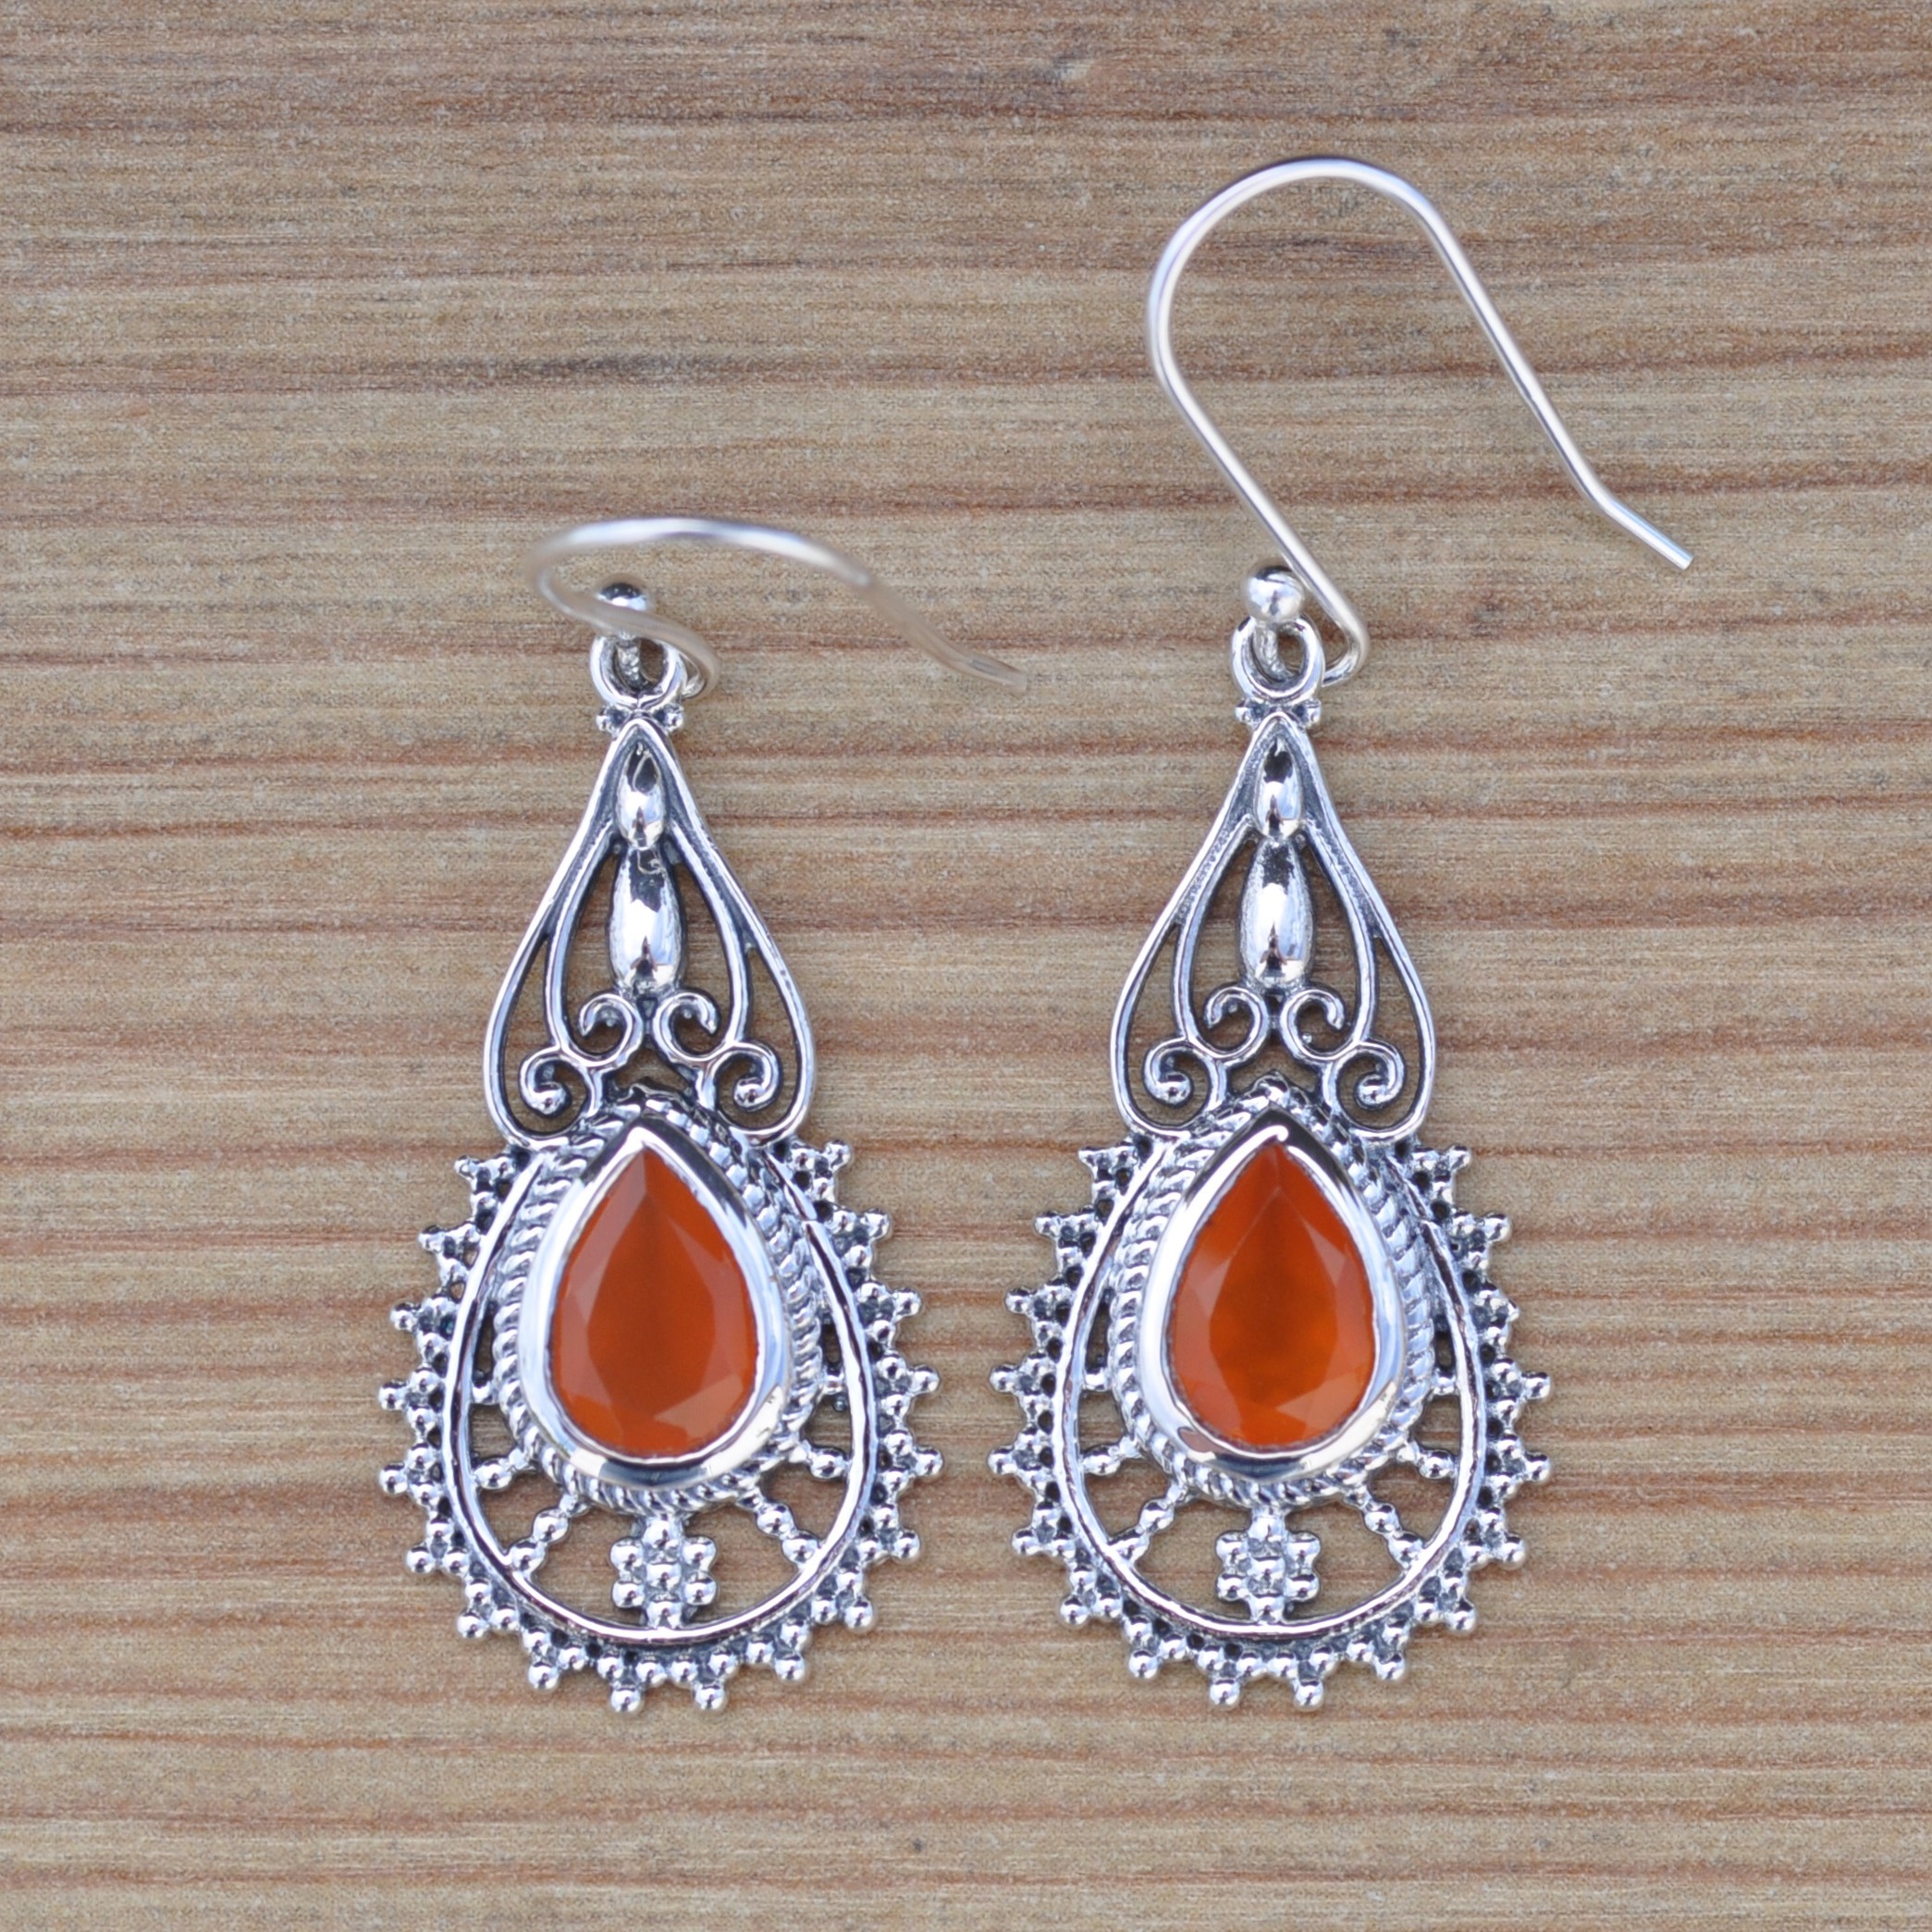 NEW ! Boucles d'oreilles ciselées en argent et pierre Cornaline (orange)